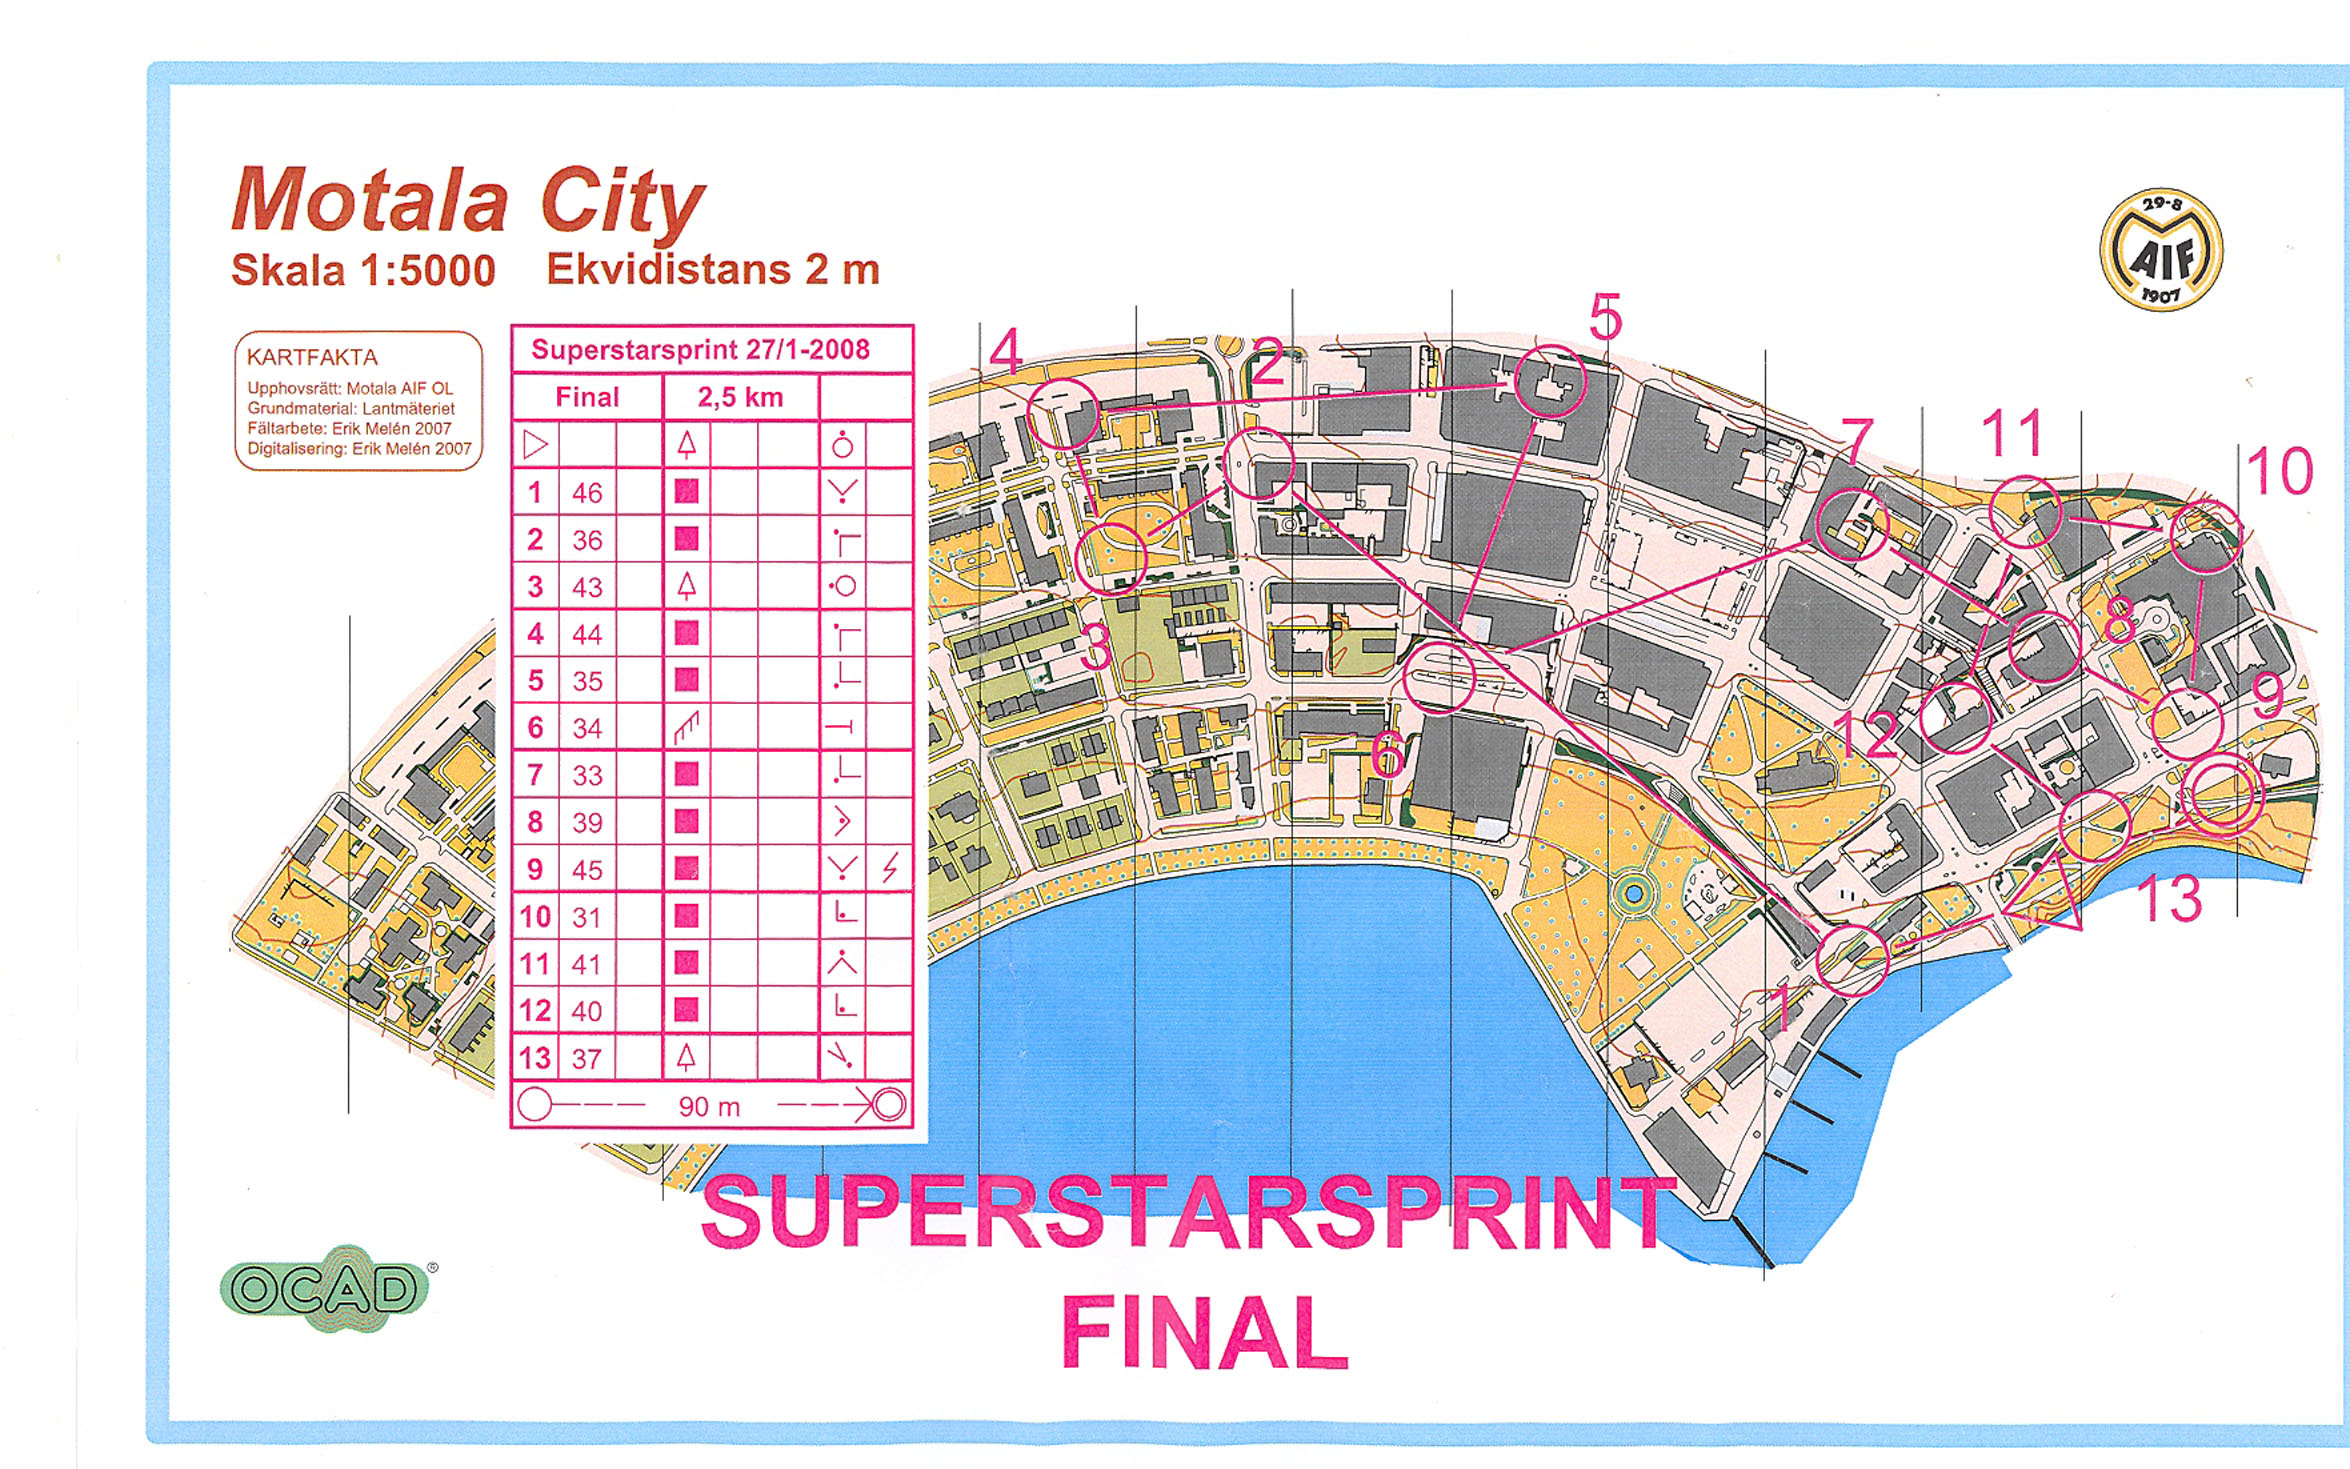 Superstarsprint Final (27/01/2008)